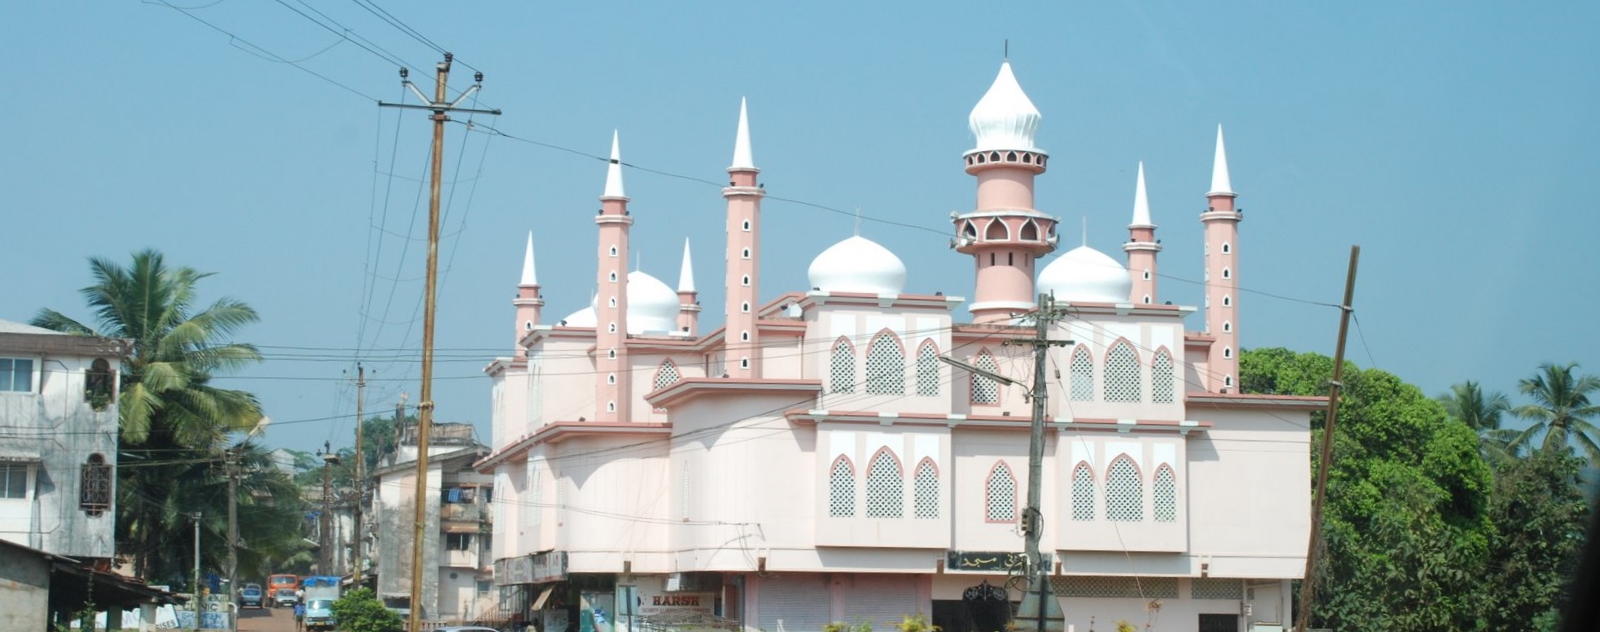 Eid in goa - mosques in goa - eid 2018